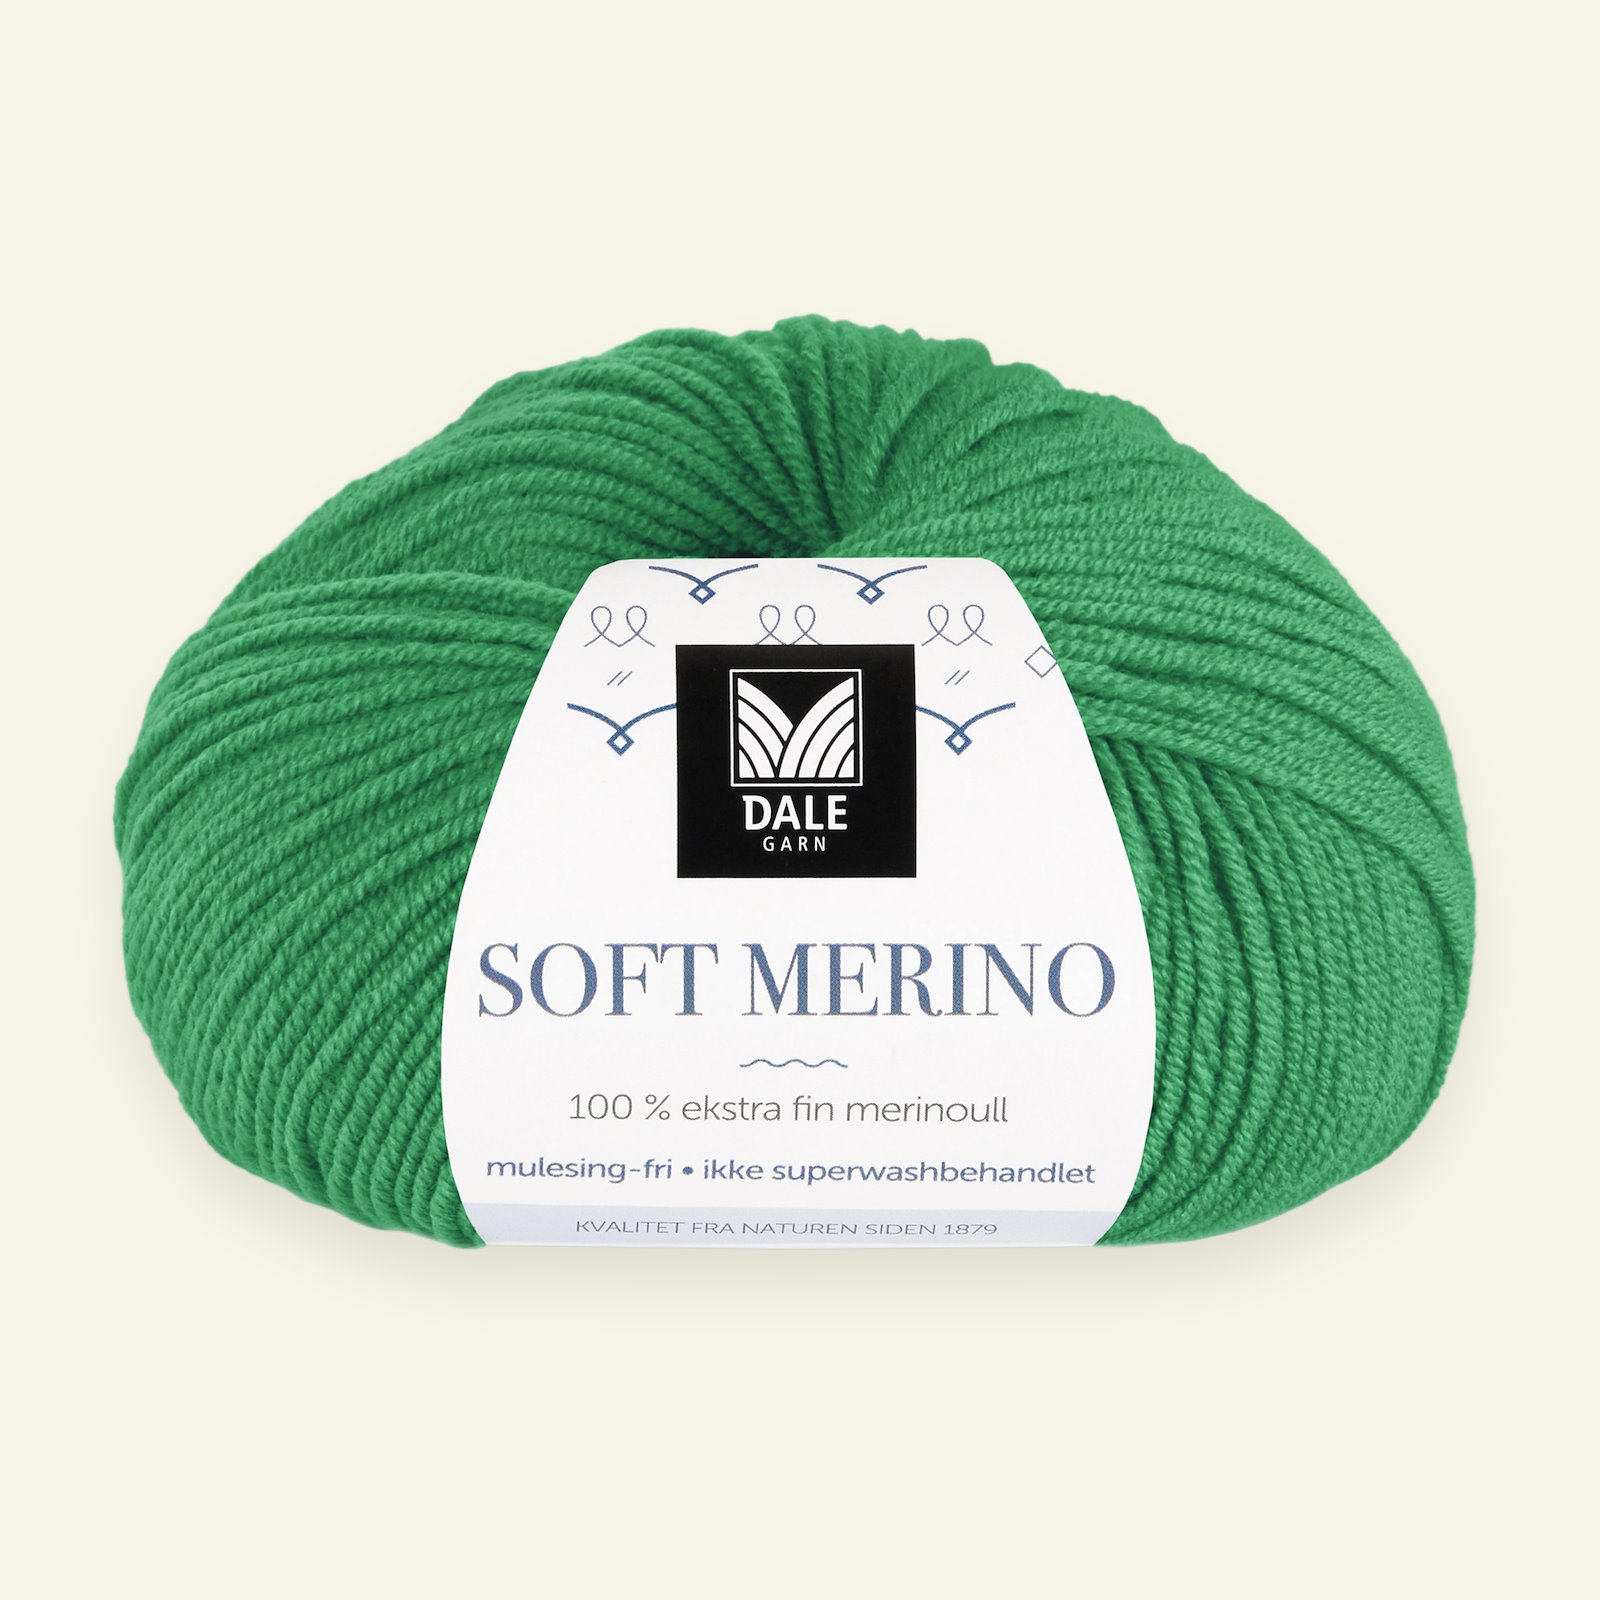 Dale Garn, 100% ekstra fint merinogarn "Soft Merino", Skarp grønn (3030) 90000351_pack